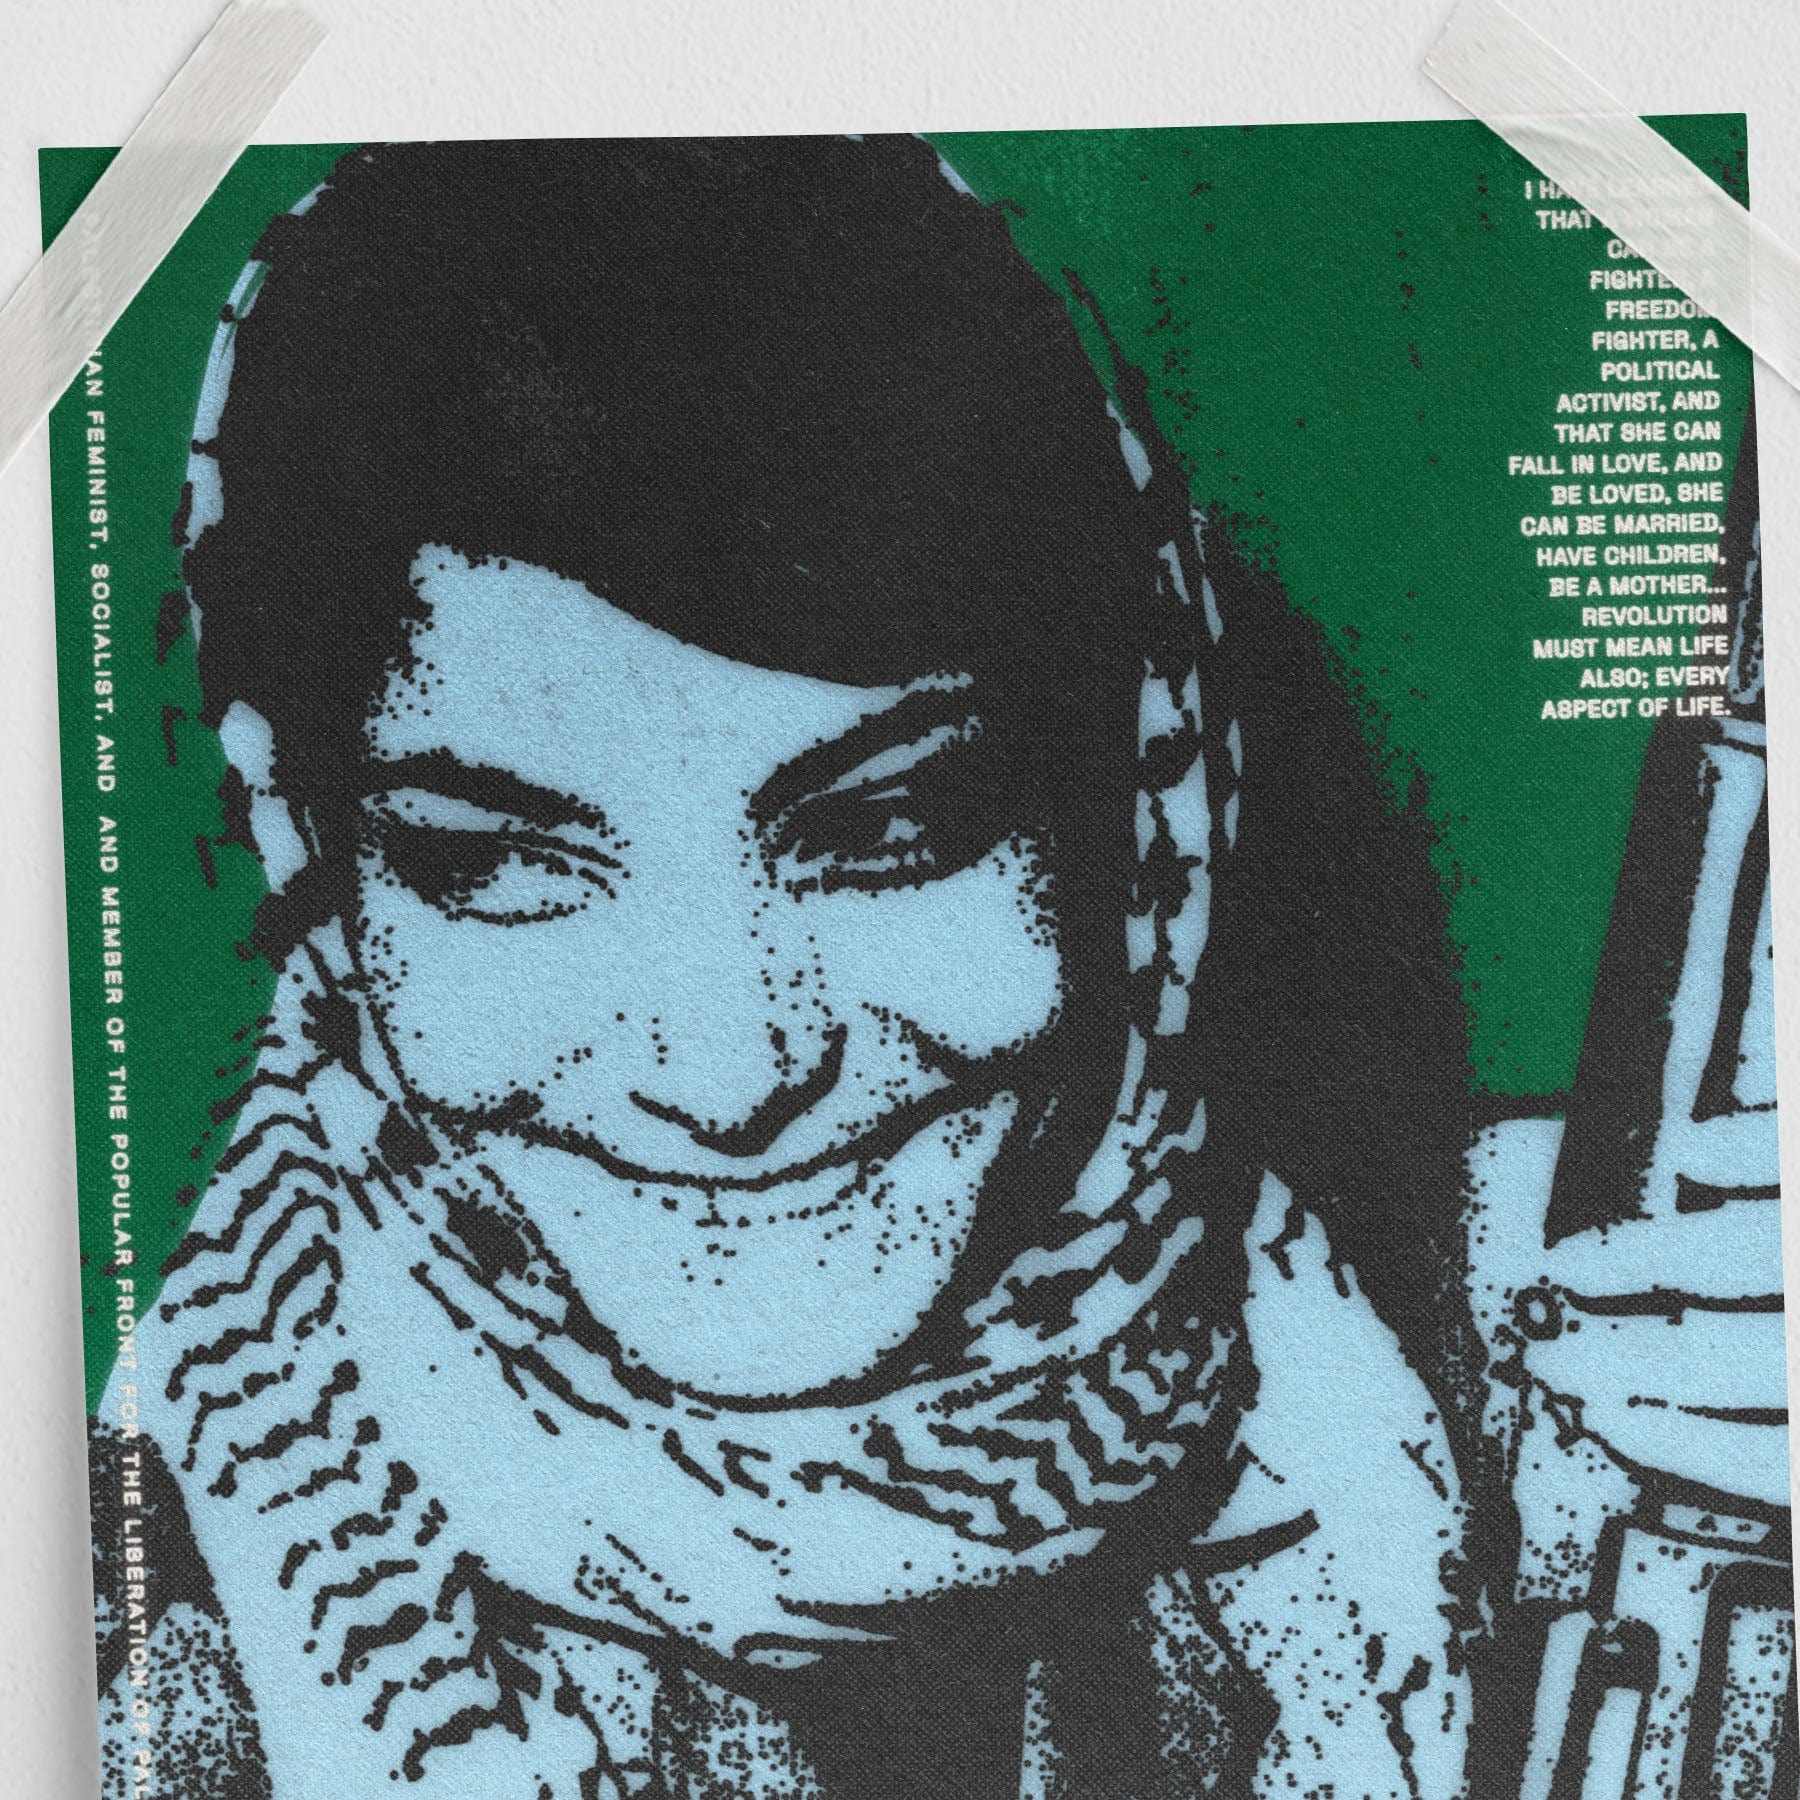 Leila Khaled (11 x 17 Poster print)